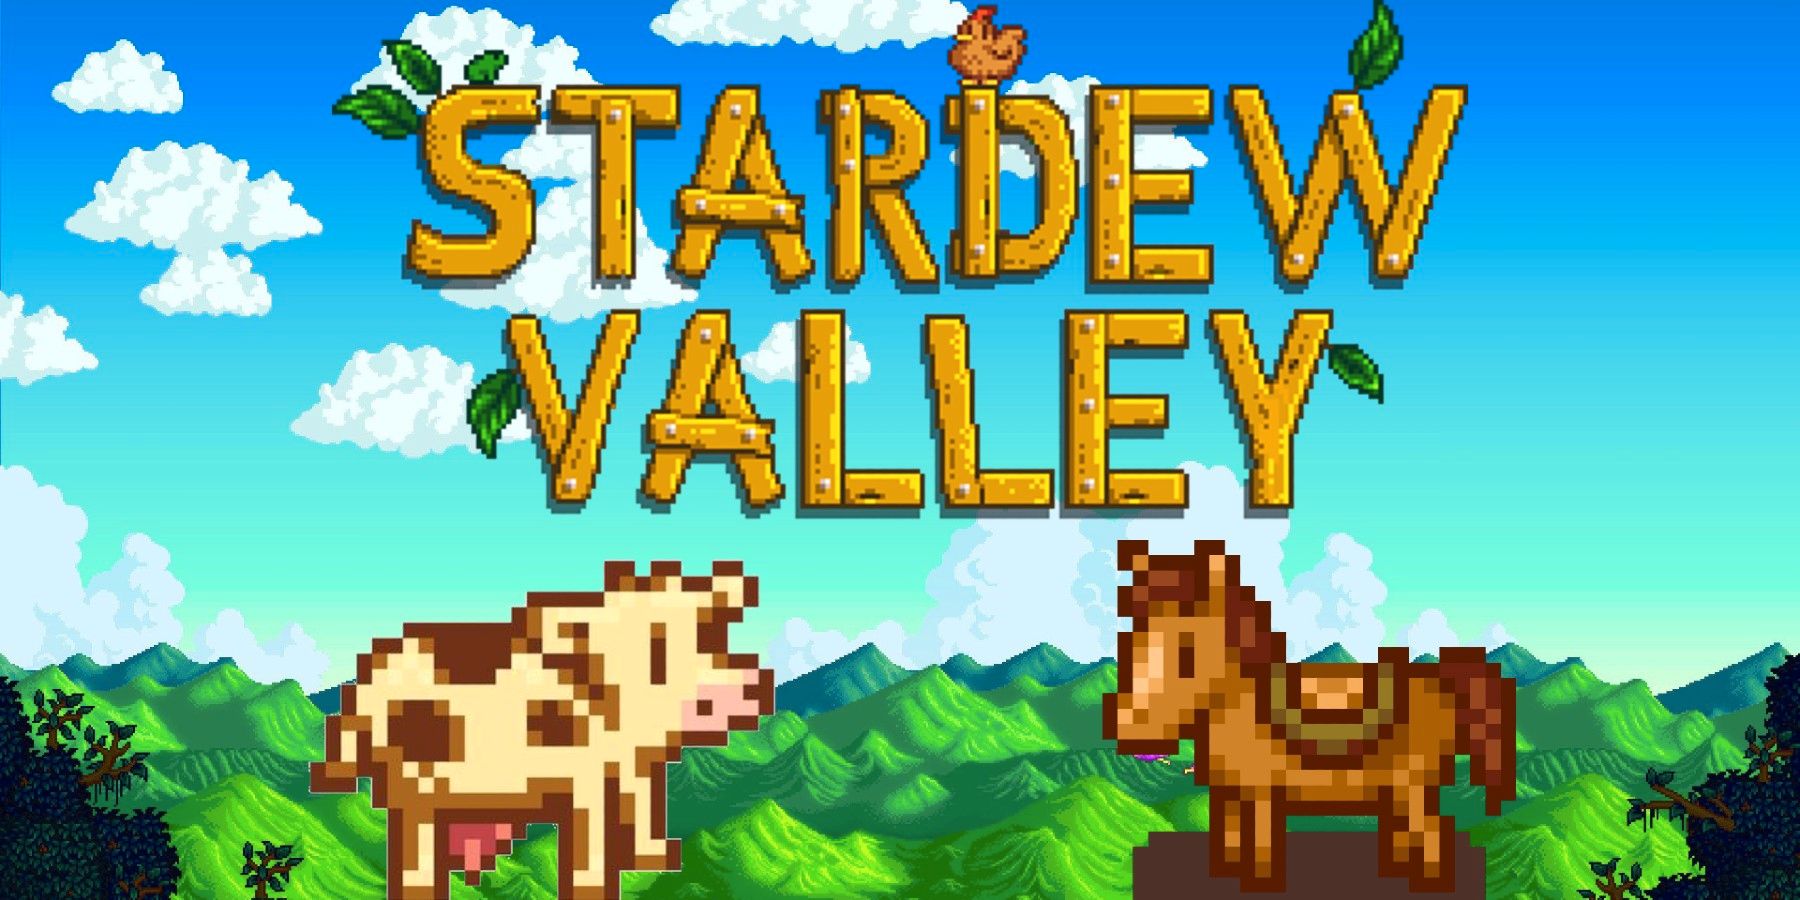 يُظهر مقطع Stardew Valley النافع ماشية “الرعي” للاعب